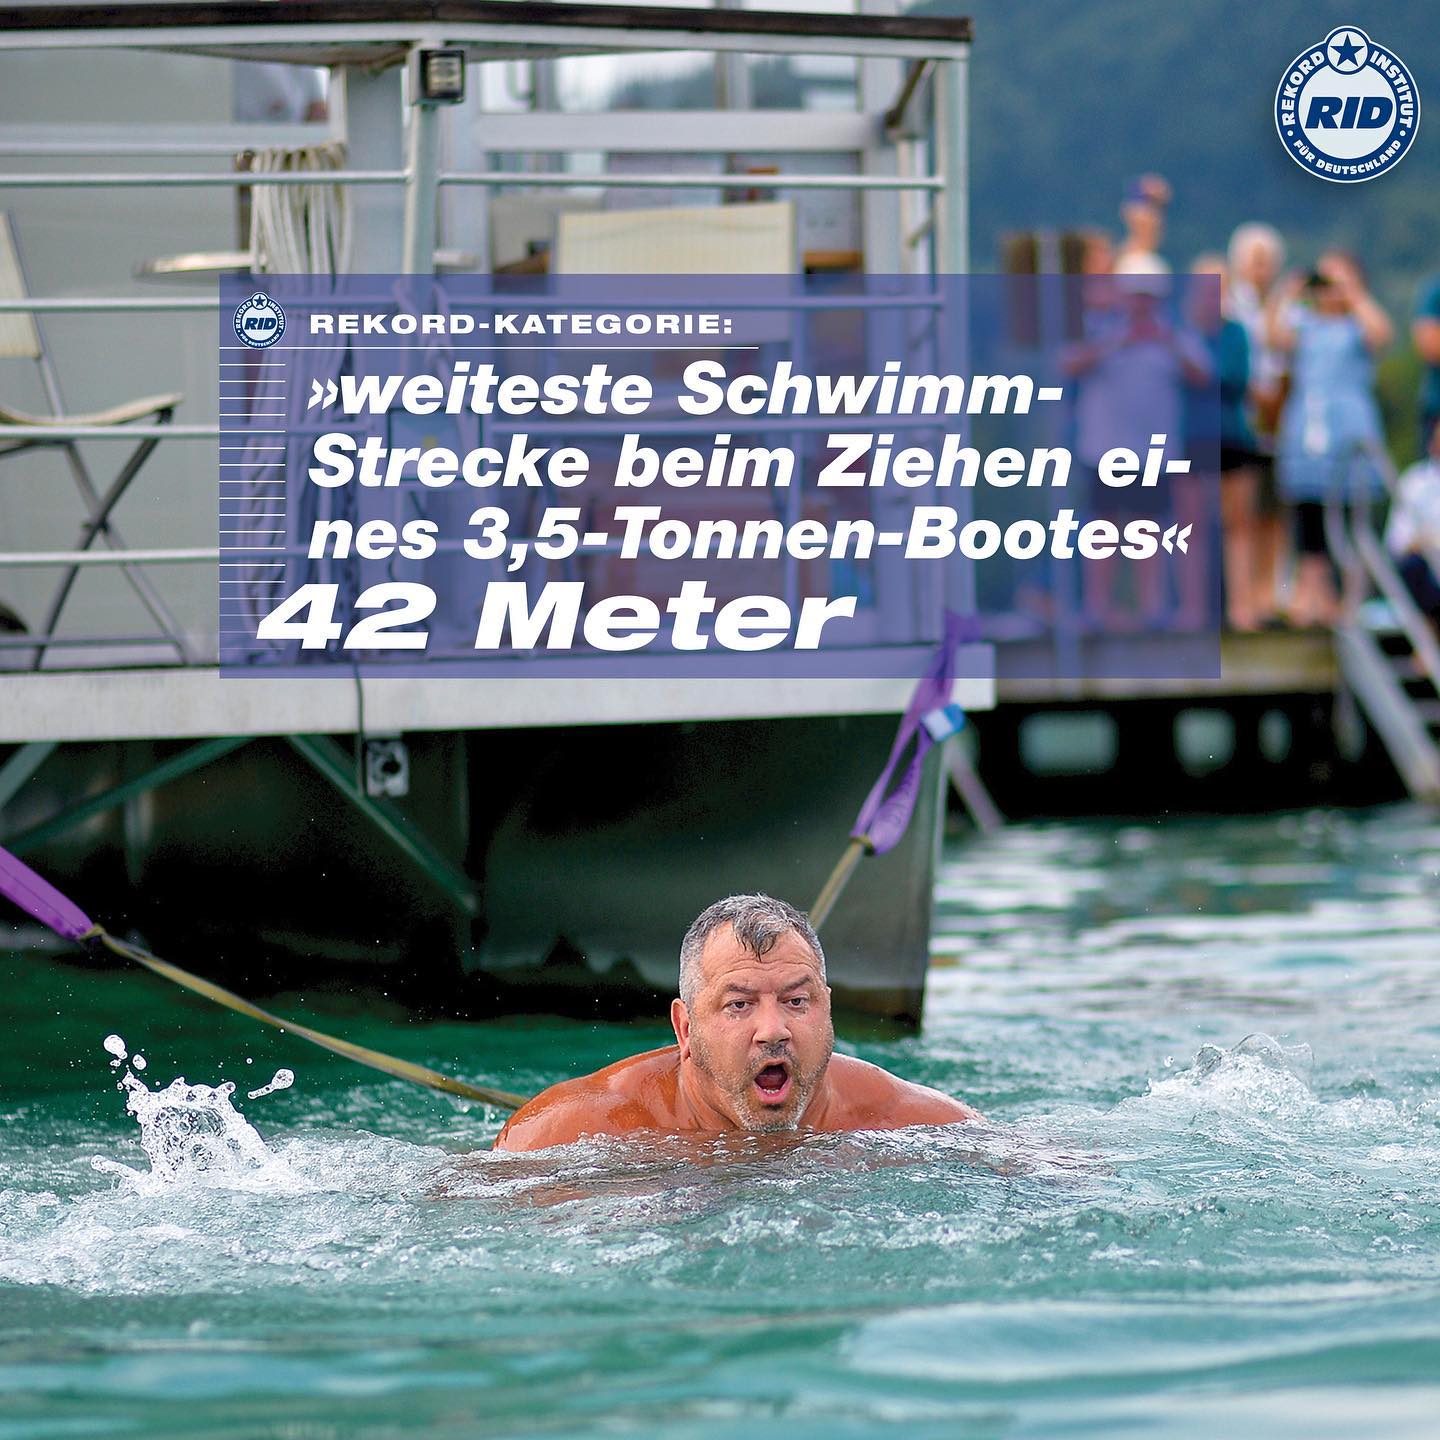 Einsatz lohnt sich: Mit dem Zurücklegen dieser Strecke im Wörthersee (A) erzielte Martin Hoi am 5. August 2019 den RID-Weltrekord für die »weiteste Schwimm-Strecke beim Ziehen eines 3,5-Tonnen-Bootes«. 
Seit langer Zeit ist diese Bestleistung ungeschlagen - wann wird sie überboten? 🔥 Weitere RID-Weltrekorde zum Thema Strongmen findet Ihr auf unserer Webseite. Klickt hierfür auf den Link in unserer Bio!
#rekordinstitutfürdeutschland #rekordinstitfuerdeutschland #buchderweltrekorde #RID #olafkuchenbecker #kuchenbecker #ridrekordrichter #weltrekord #rekord #bestleistung #hamburg #ridrekordurkunde #rekordurkunde #ridweltrekord #schwimmen #schwimmenmachtglücklich #martinhoi #strongman #strongmen #strength #strenghttraining #monday #montag #mondaymotivation #boot #bootshaus #schiff #schifffahrt #schwimmstrecke #schwimmstrecken